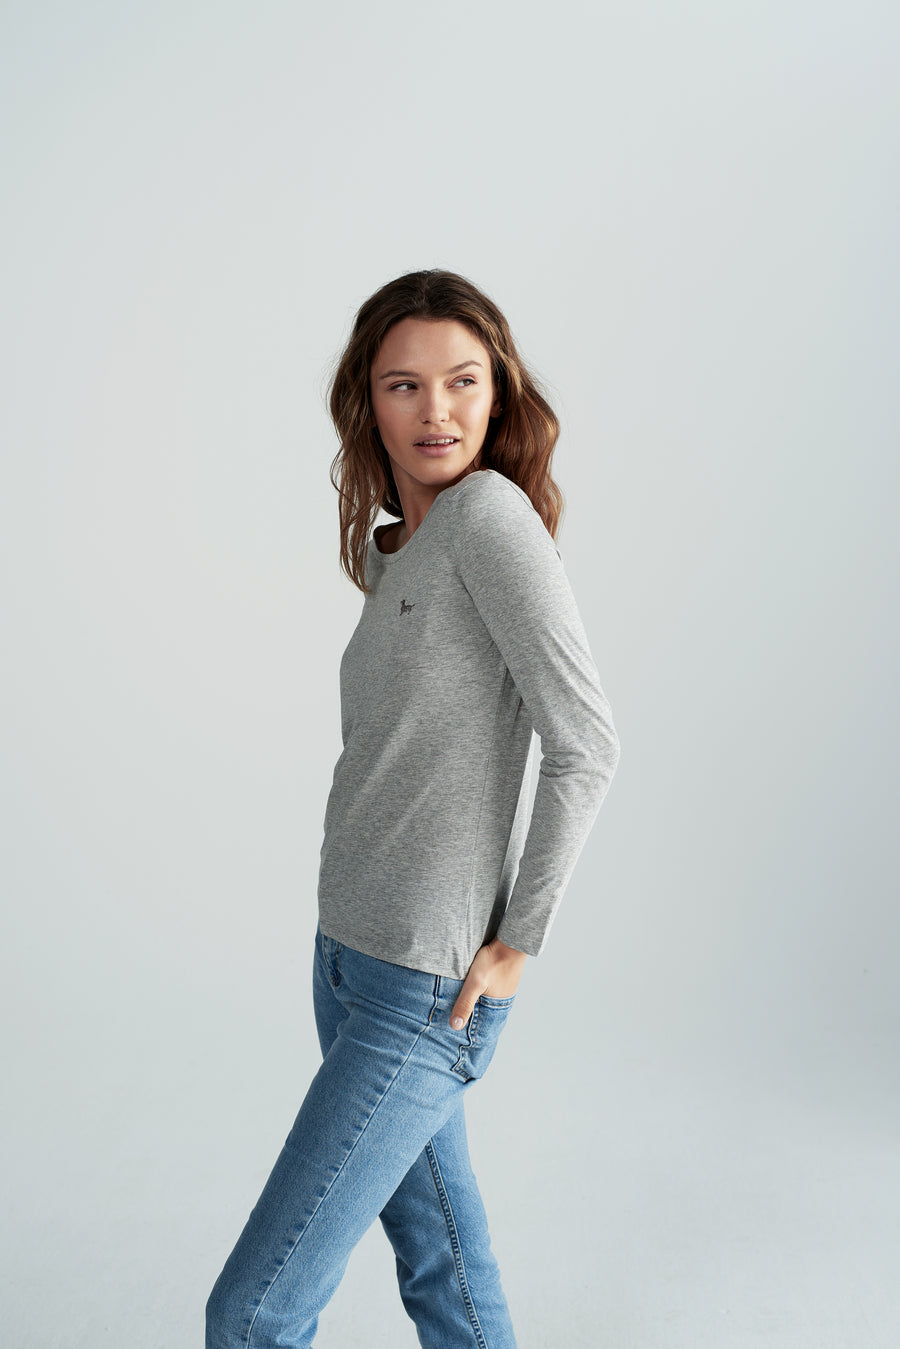 Nachhaltiges Damen T-Shirt mit Langarm in Grau mit Rauhaardackel Motiv